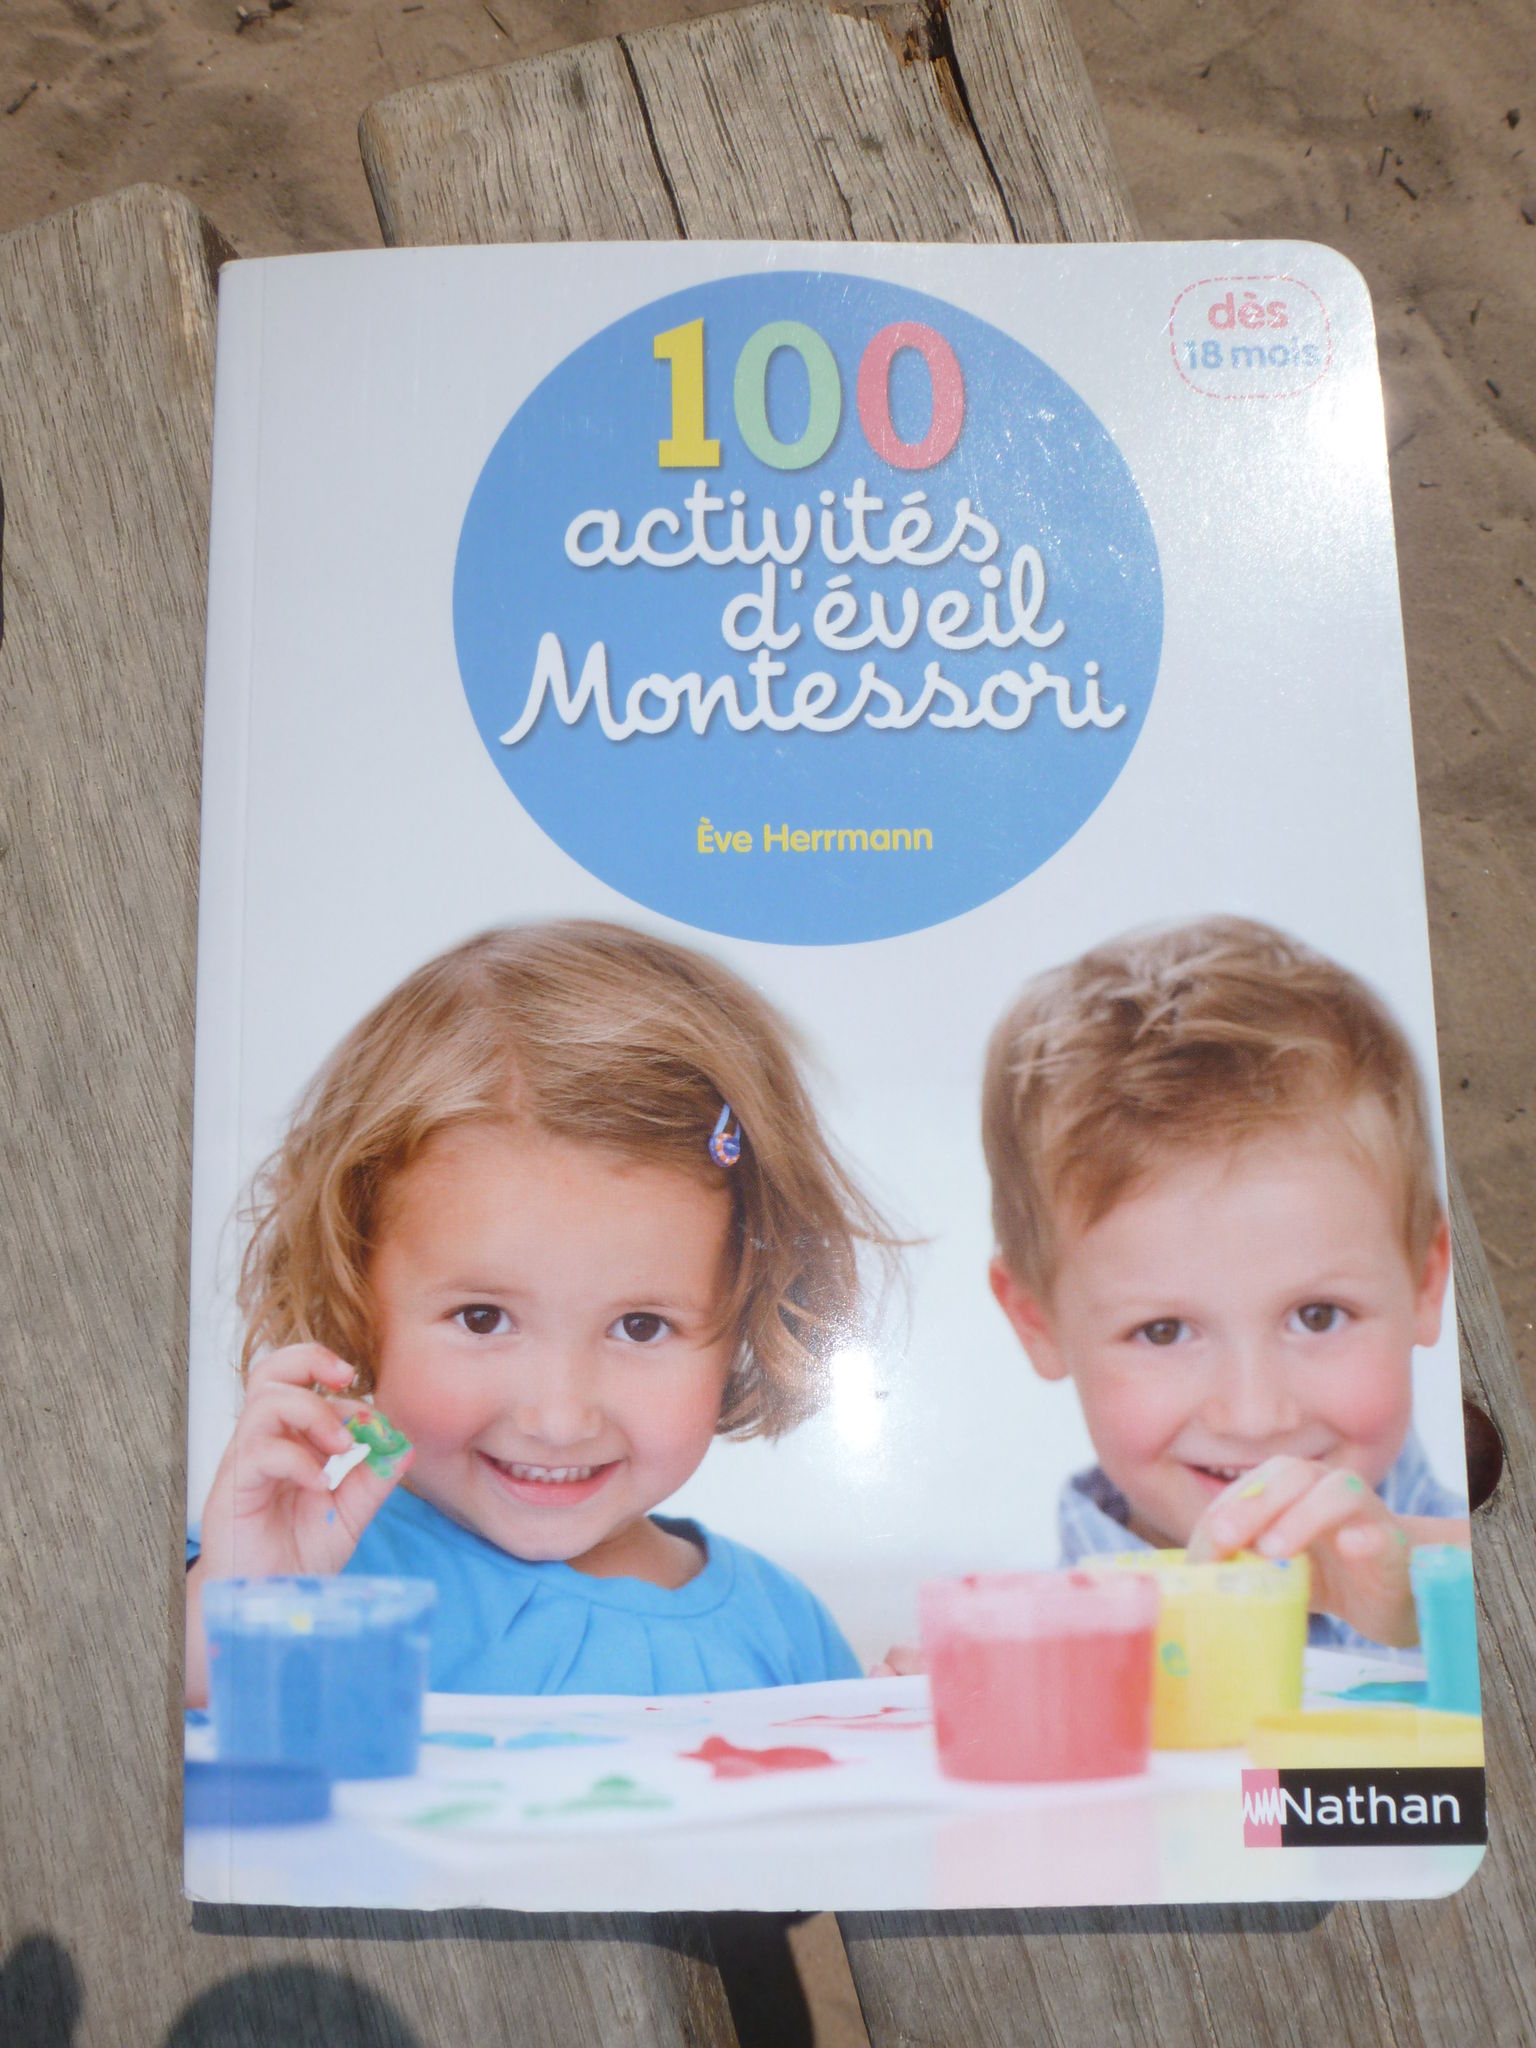 Livre Montessori dès 18 mois - L'école à la maison